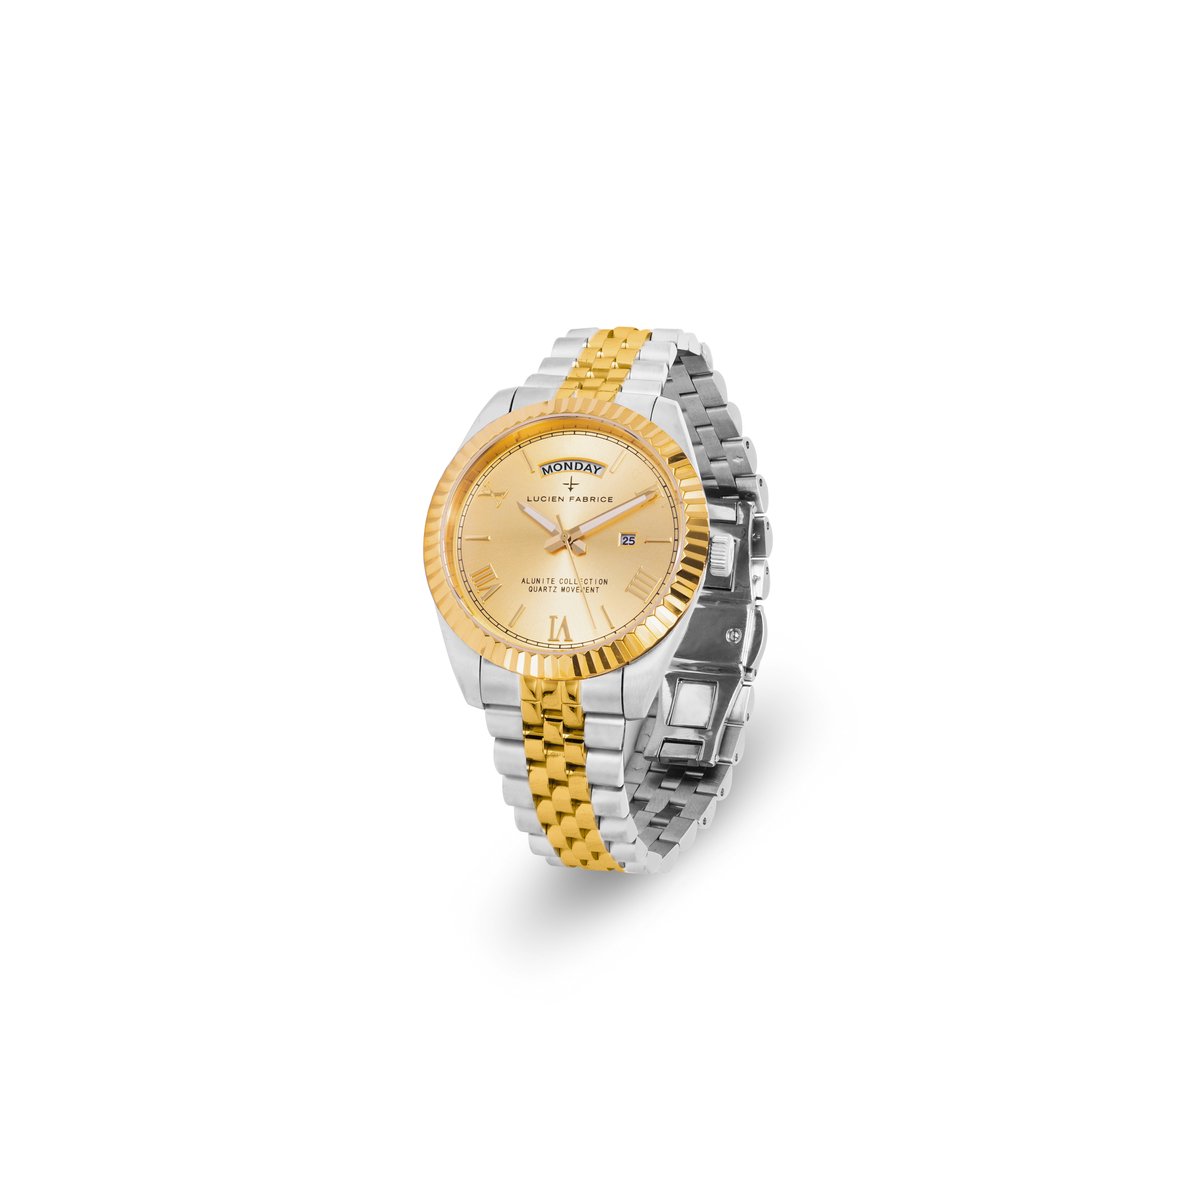 Lucien Fabrice horloge Alunite zilverkleurig/goudkleurig 40mm